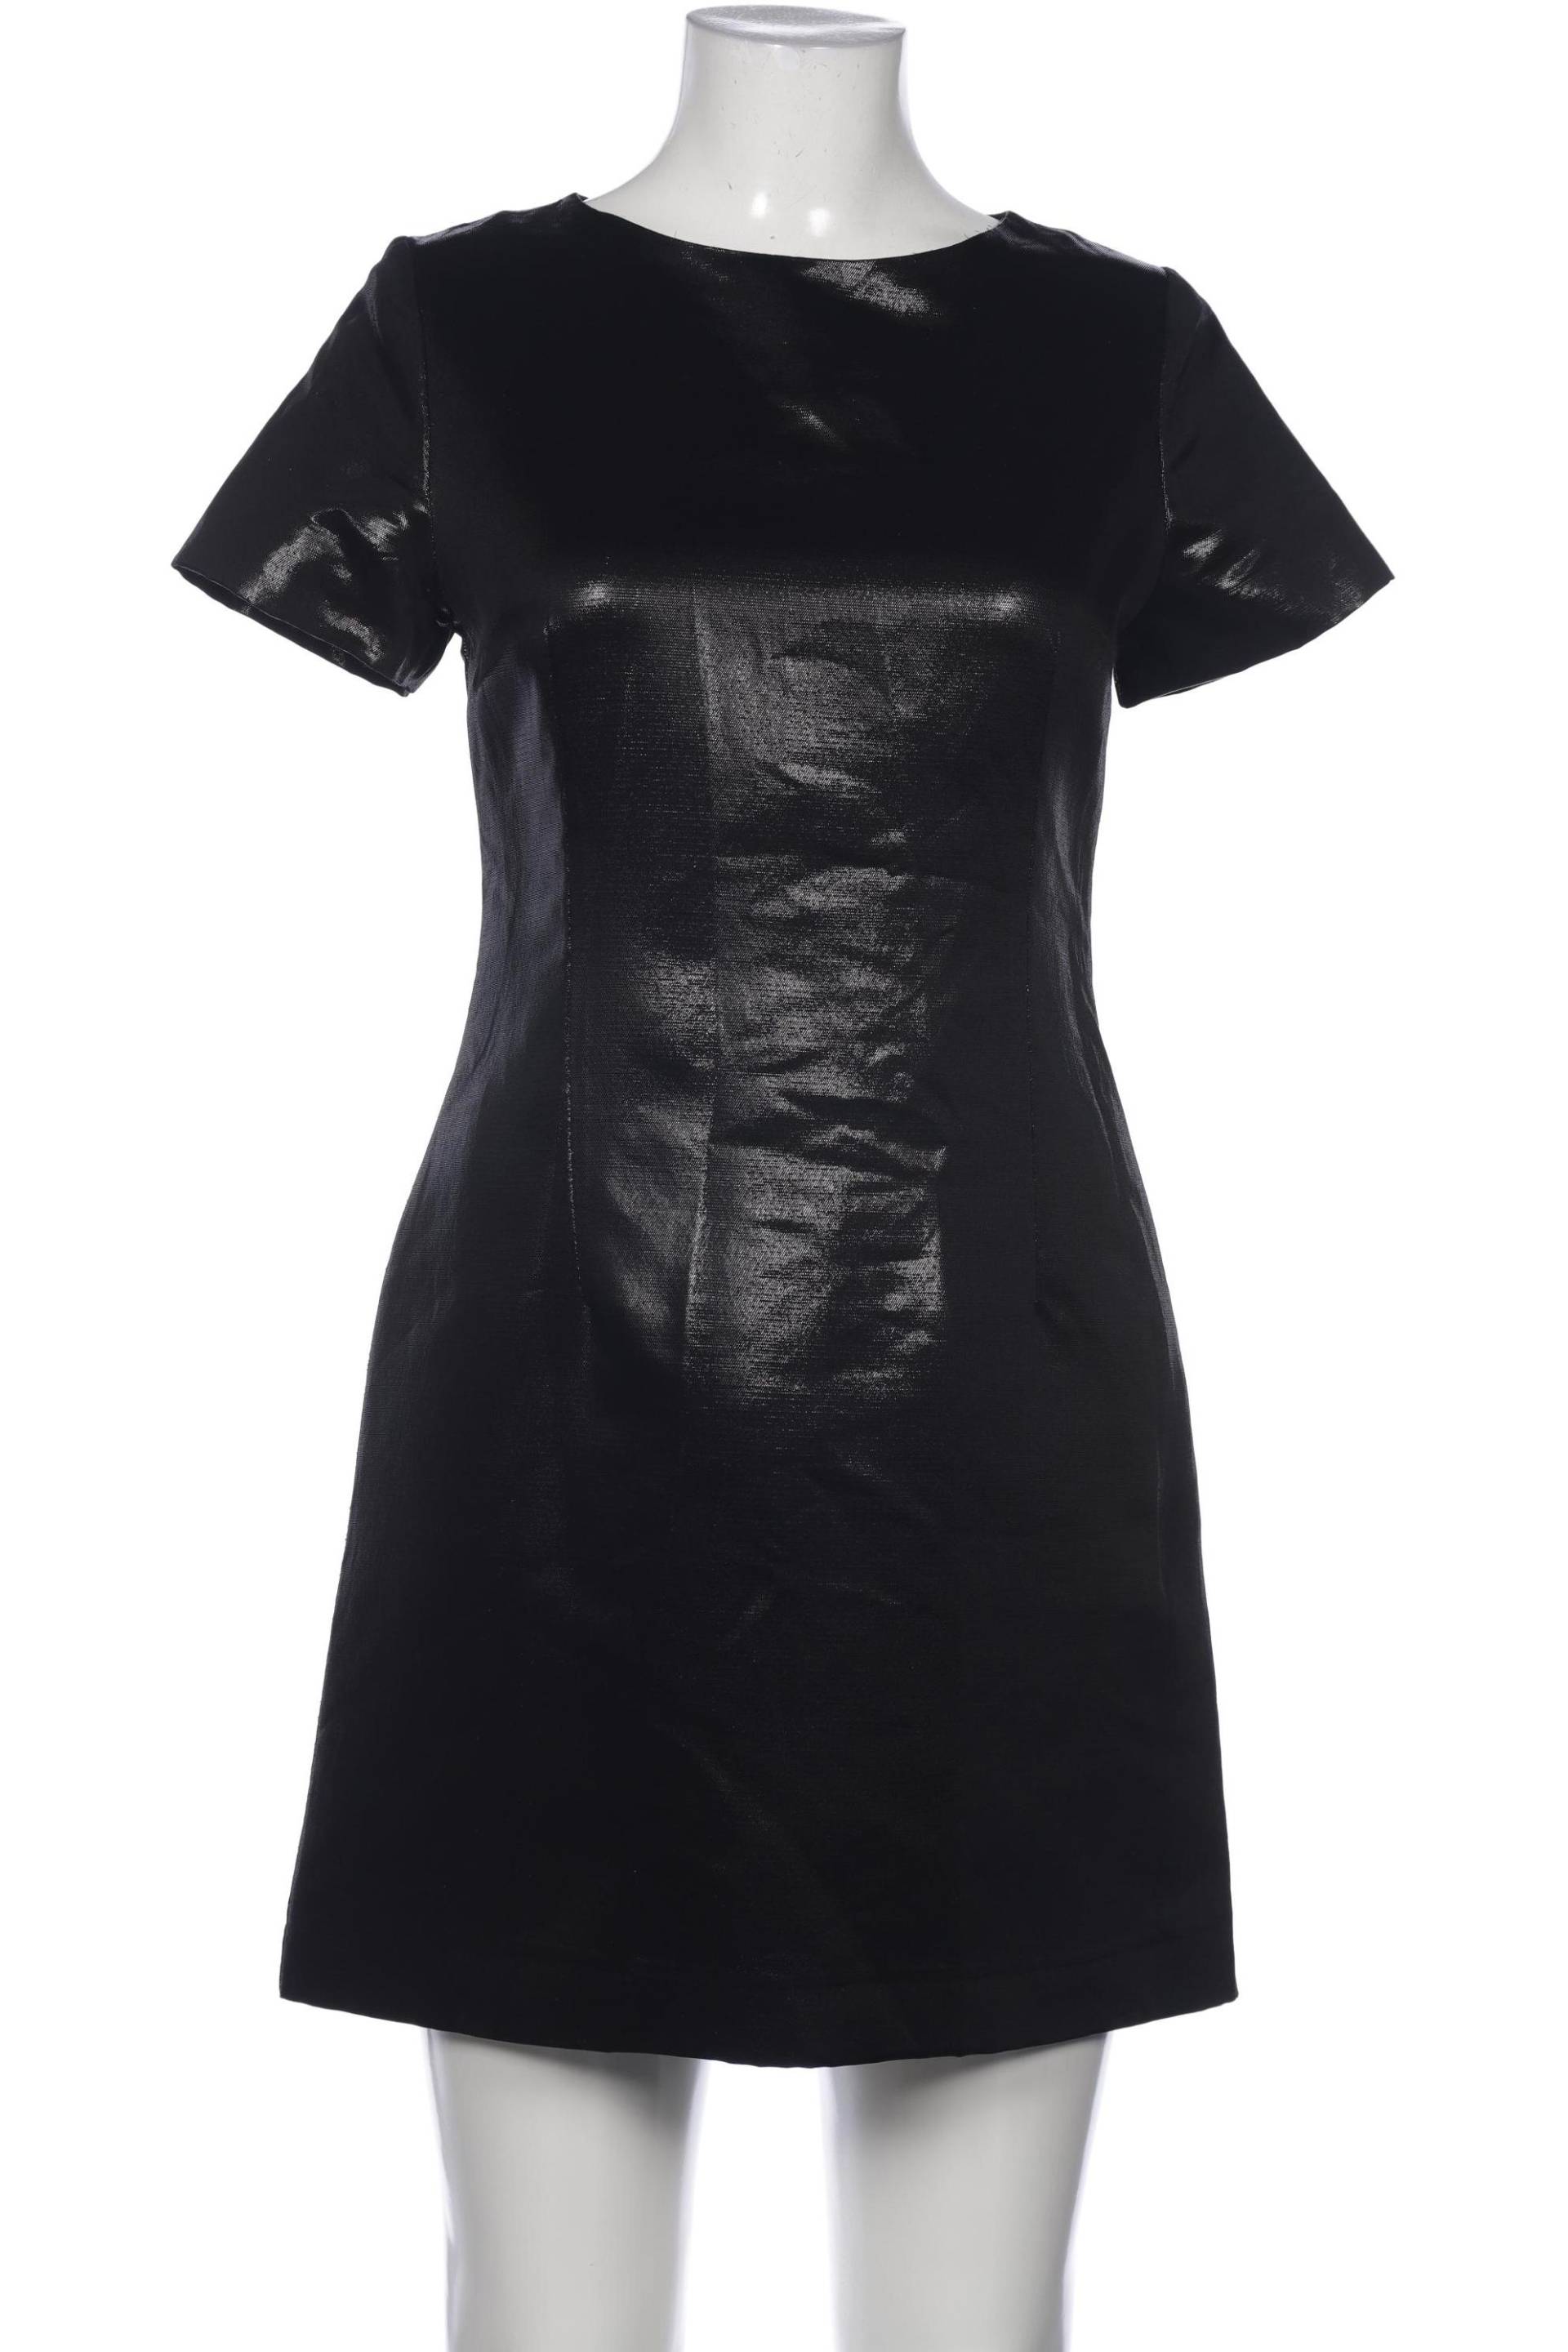 oasis Damen Kleid, schwarz, Gr. 38 von Oasis